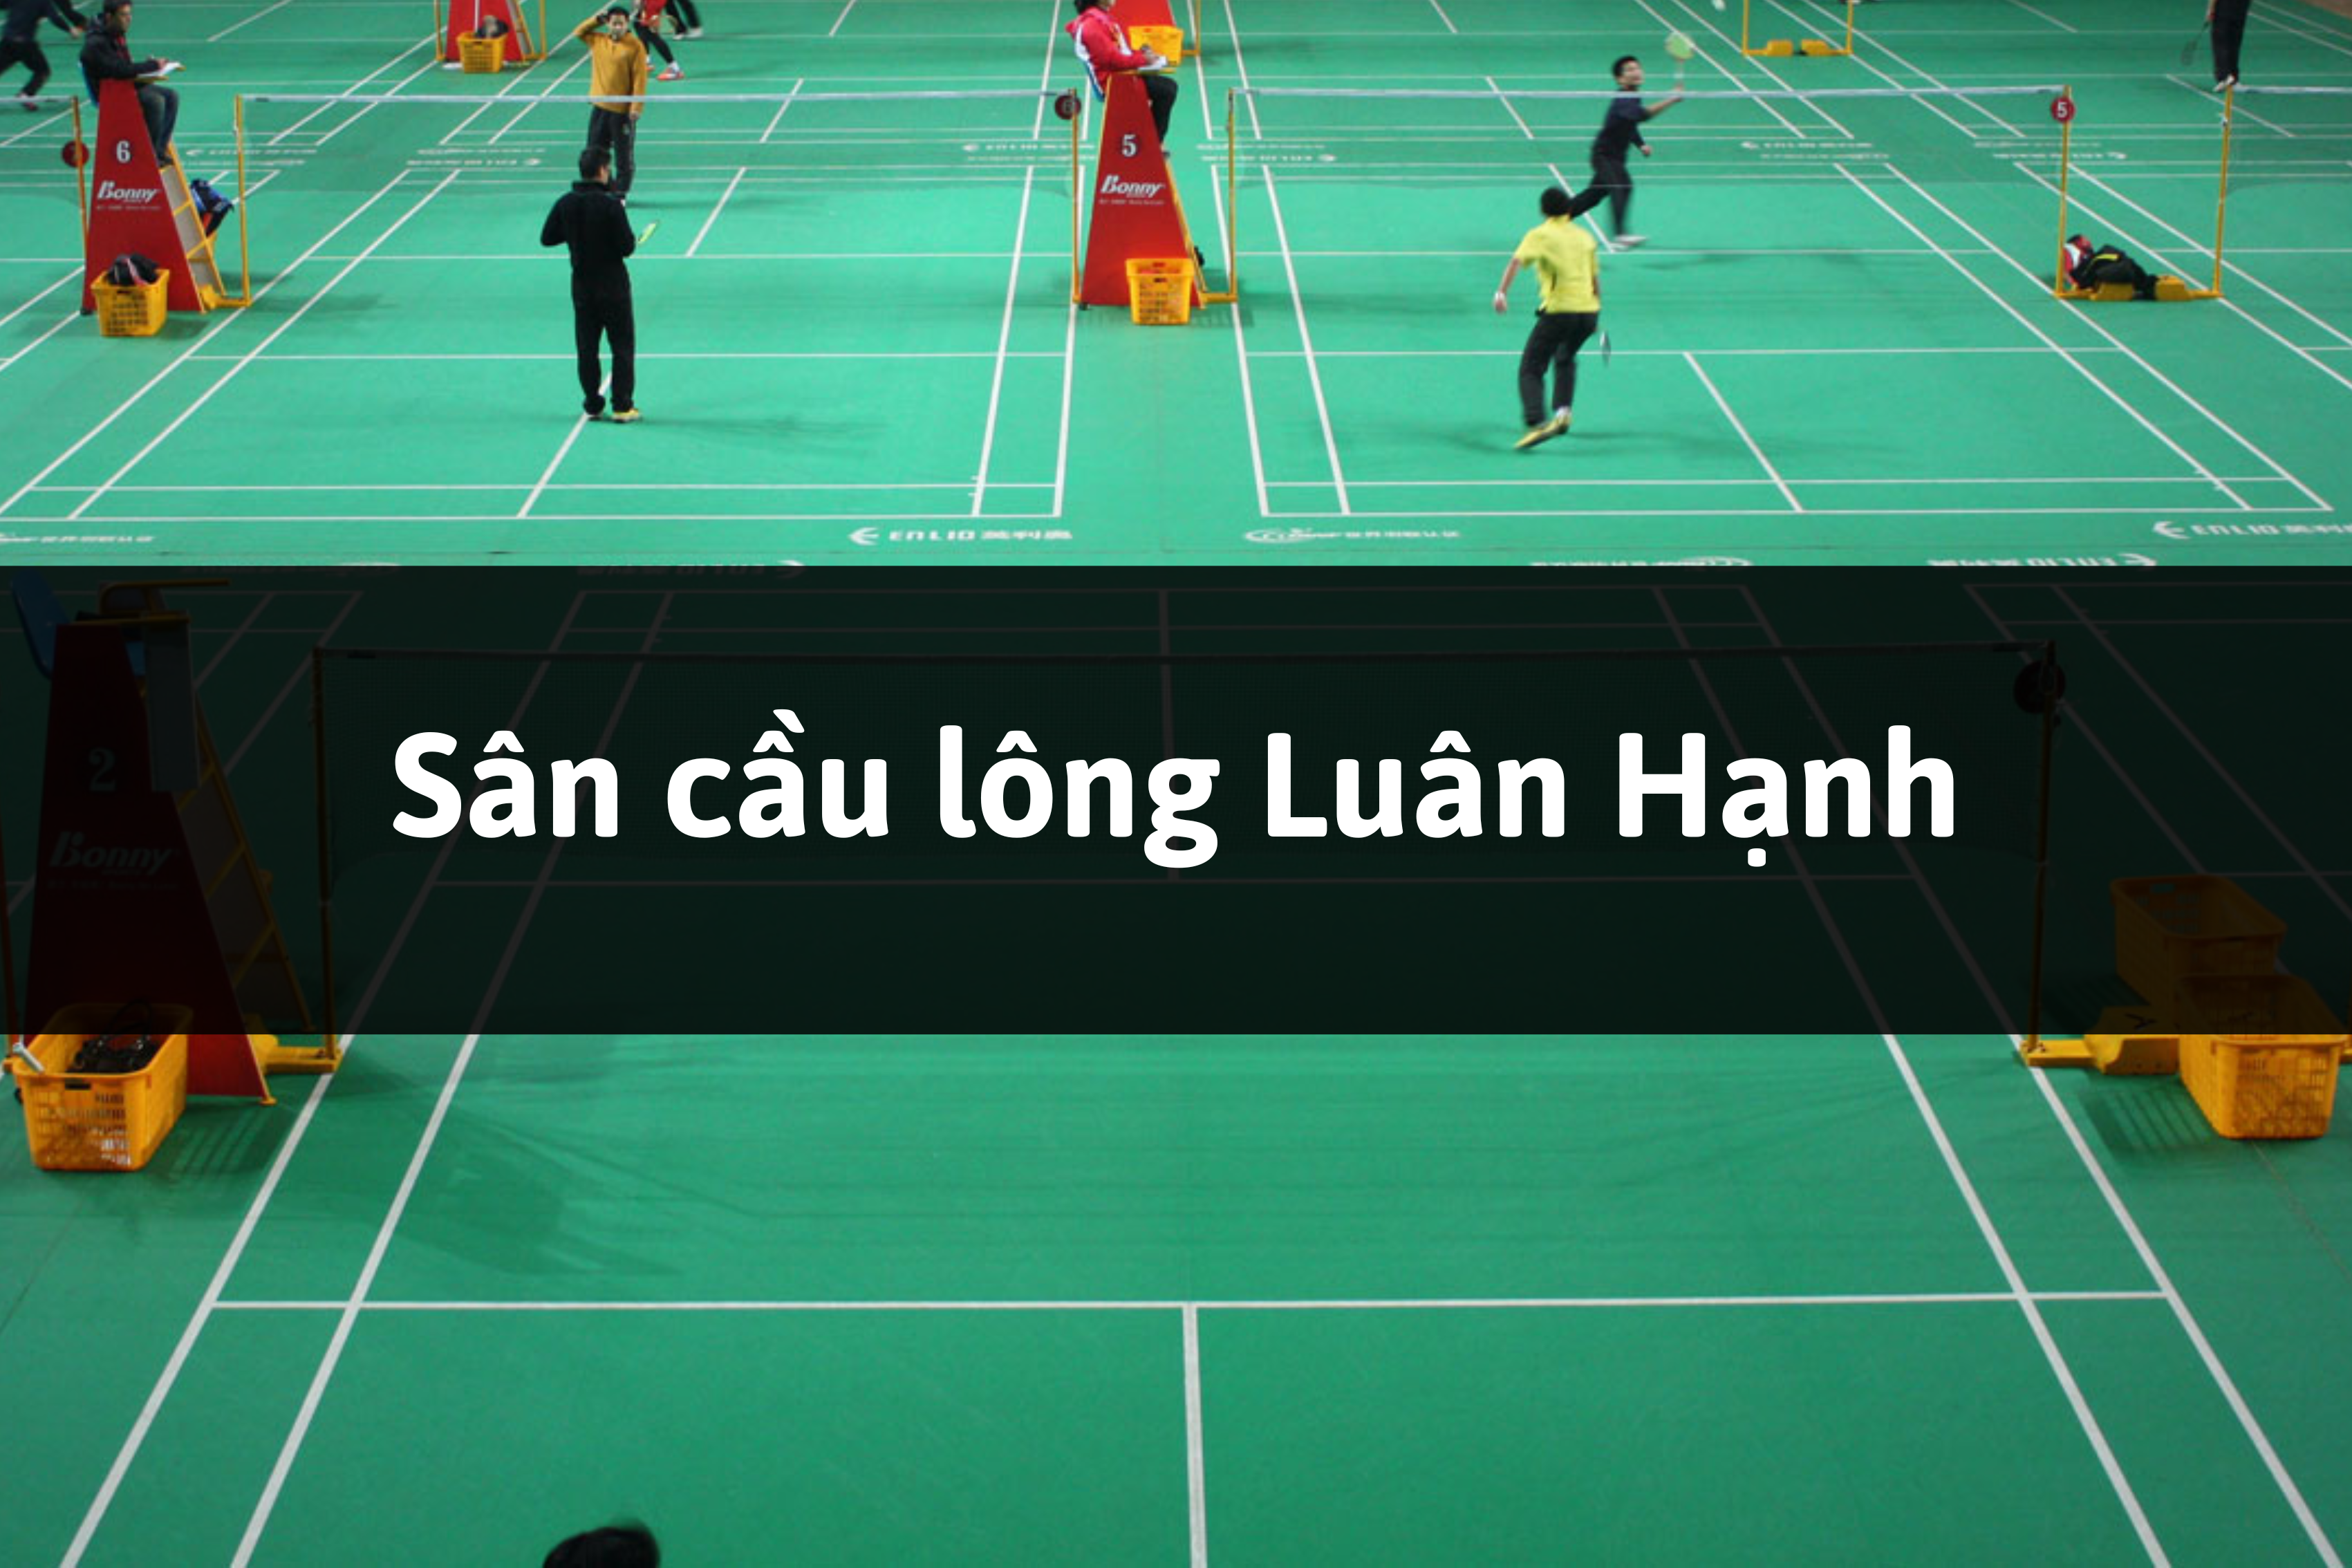 Sân cầu lông Luân Hạnh, Hàm Thuận Bắc, Bình Thuận